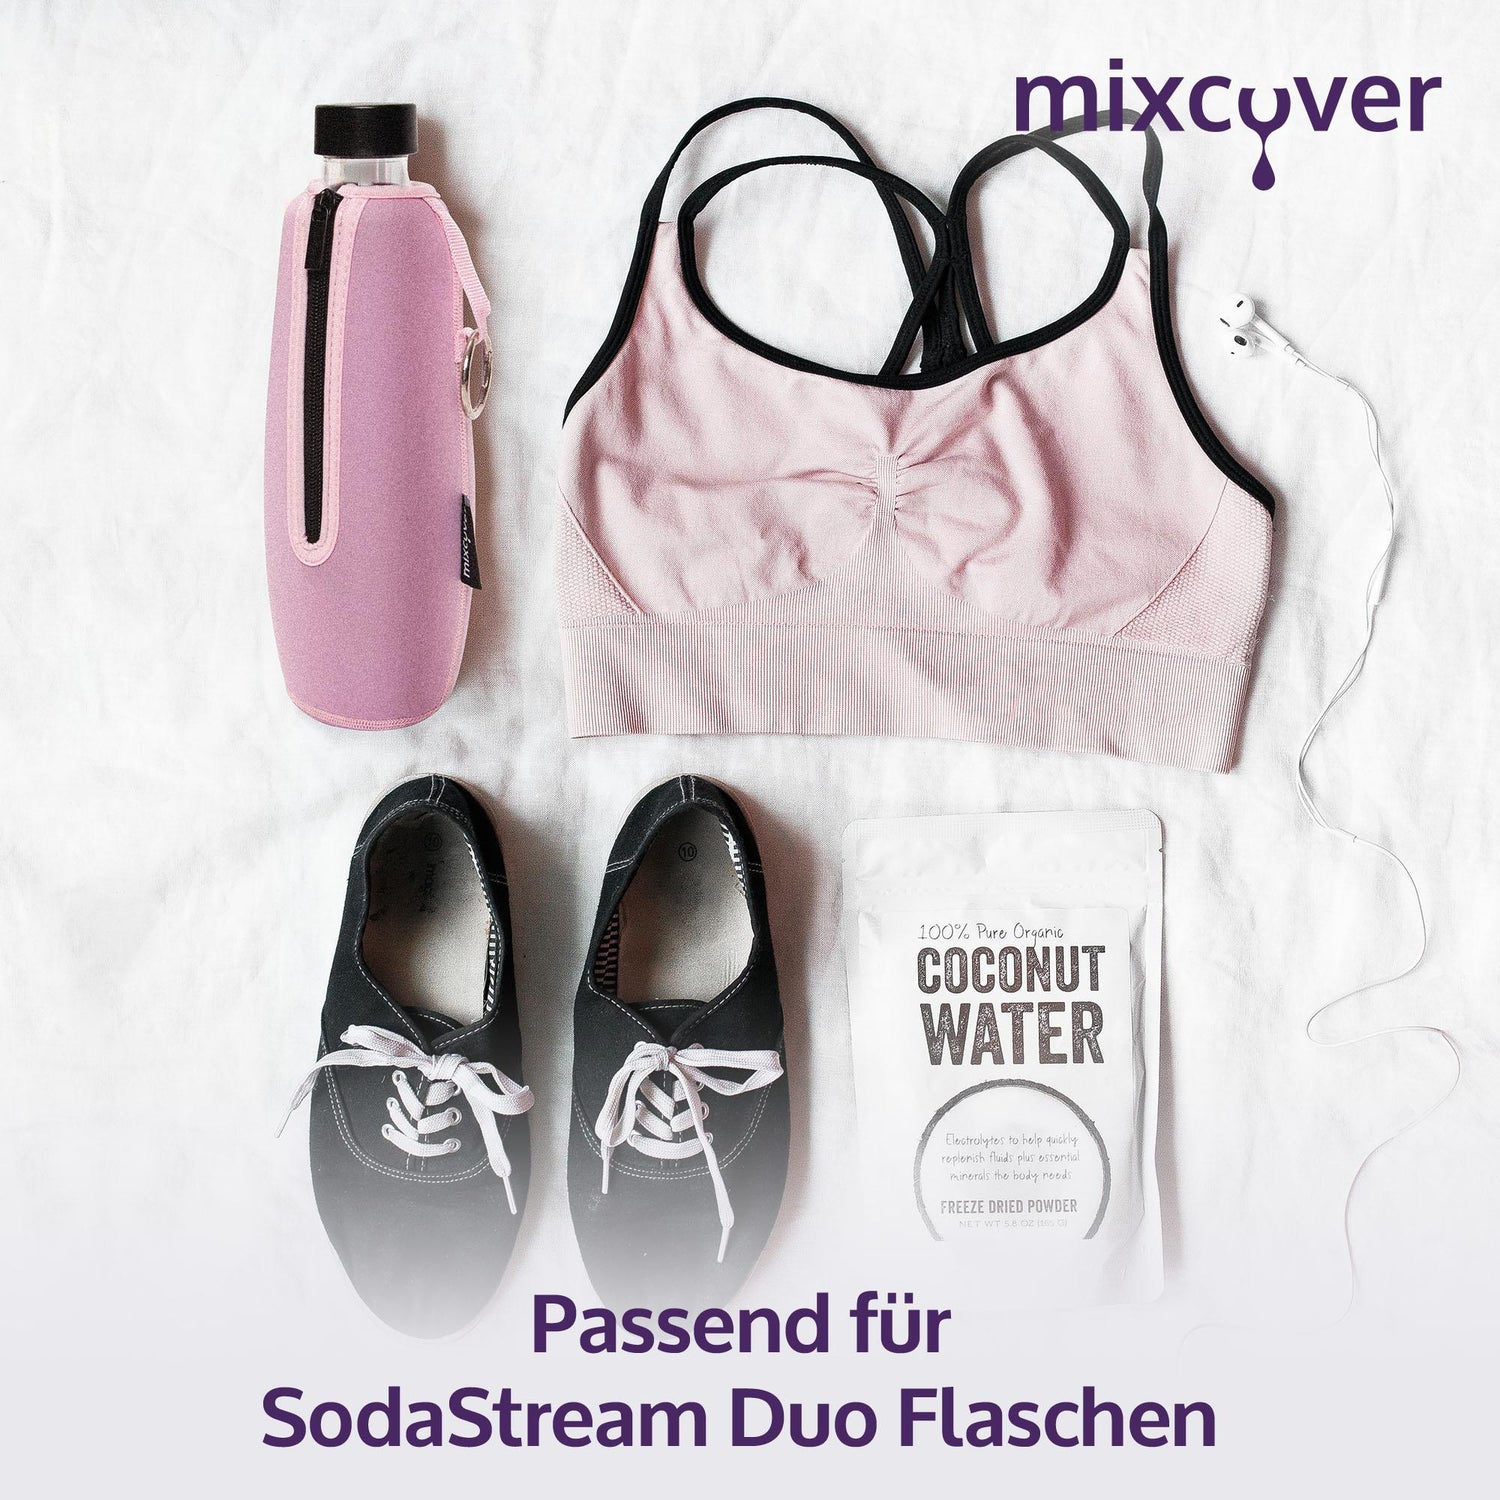 mixcover isolierter Flaschenschutz kompatibel mit SodaStream Duo Glasflaschen Schutzhülle für Flaschen, Schutz vor Bruch und Kratzern, Farbe Grau - Mixcover - Mixcover